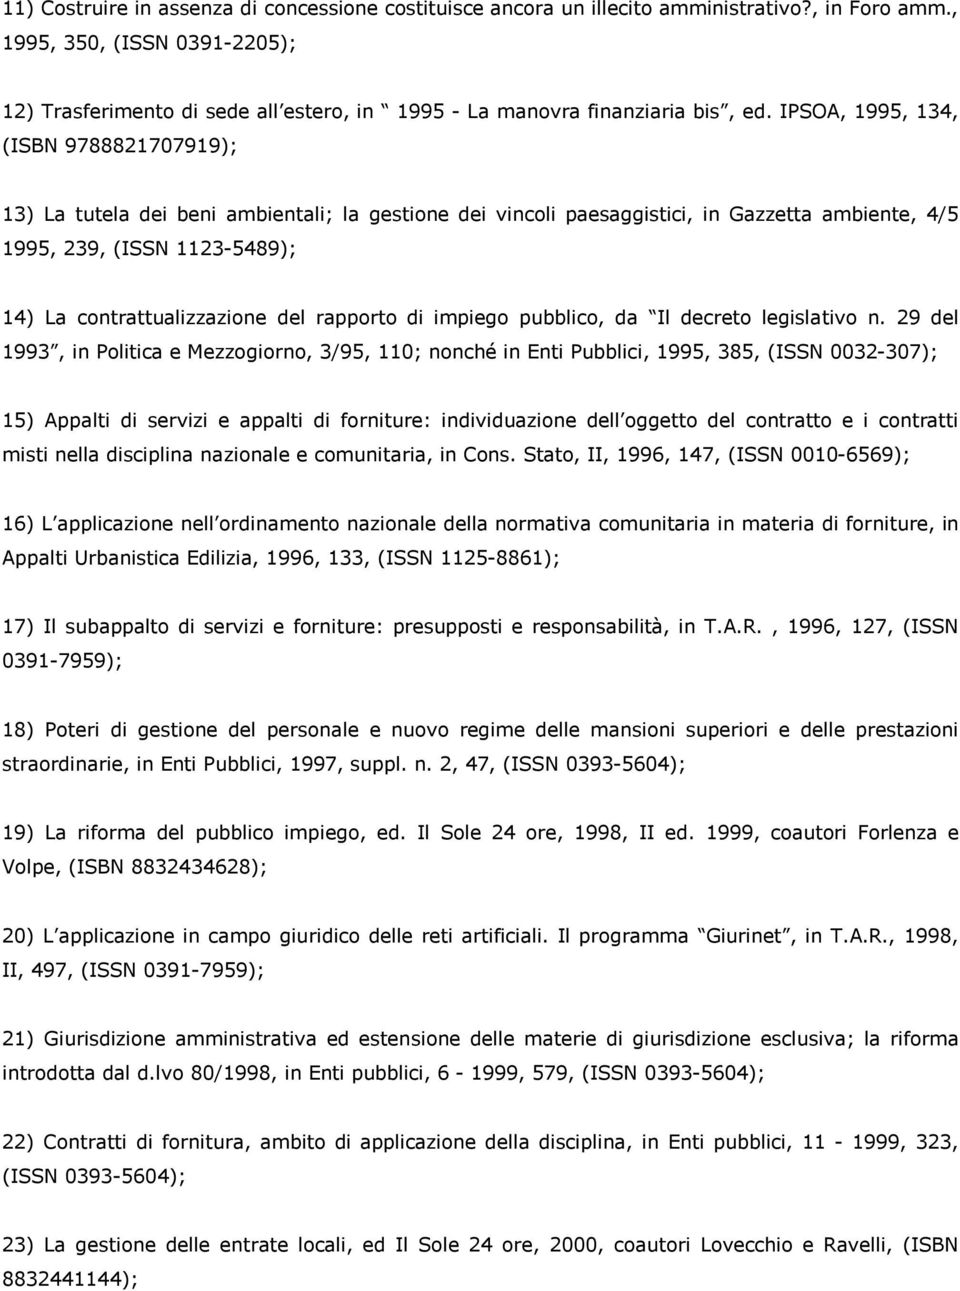 IPSOA, 1995, 134, (ISBN 9788821707919); 13) La tutela dei beni ambientali; la gestione dei vincoli paesaggistici, in Gazzetta ambiente, 4/5 1995, 239, (ISSN 1123-5489); 14) La contrattualizzazione